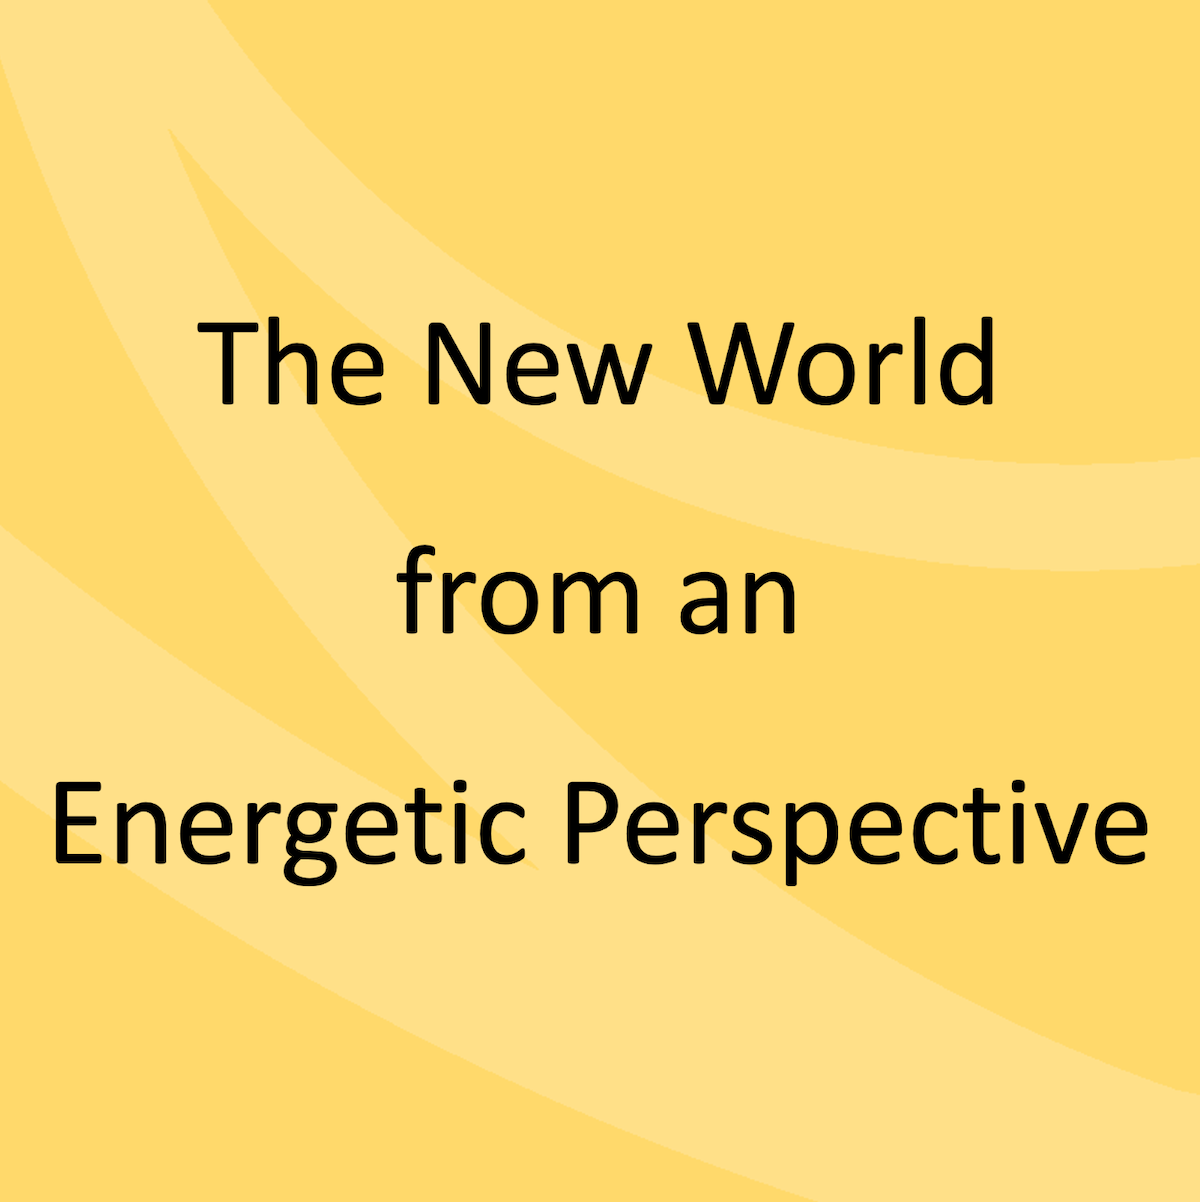 De nieuwe wereld vanuit energetisch perspectief.